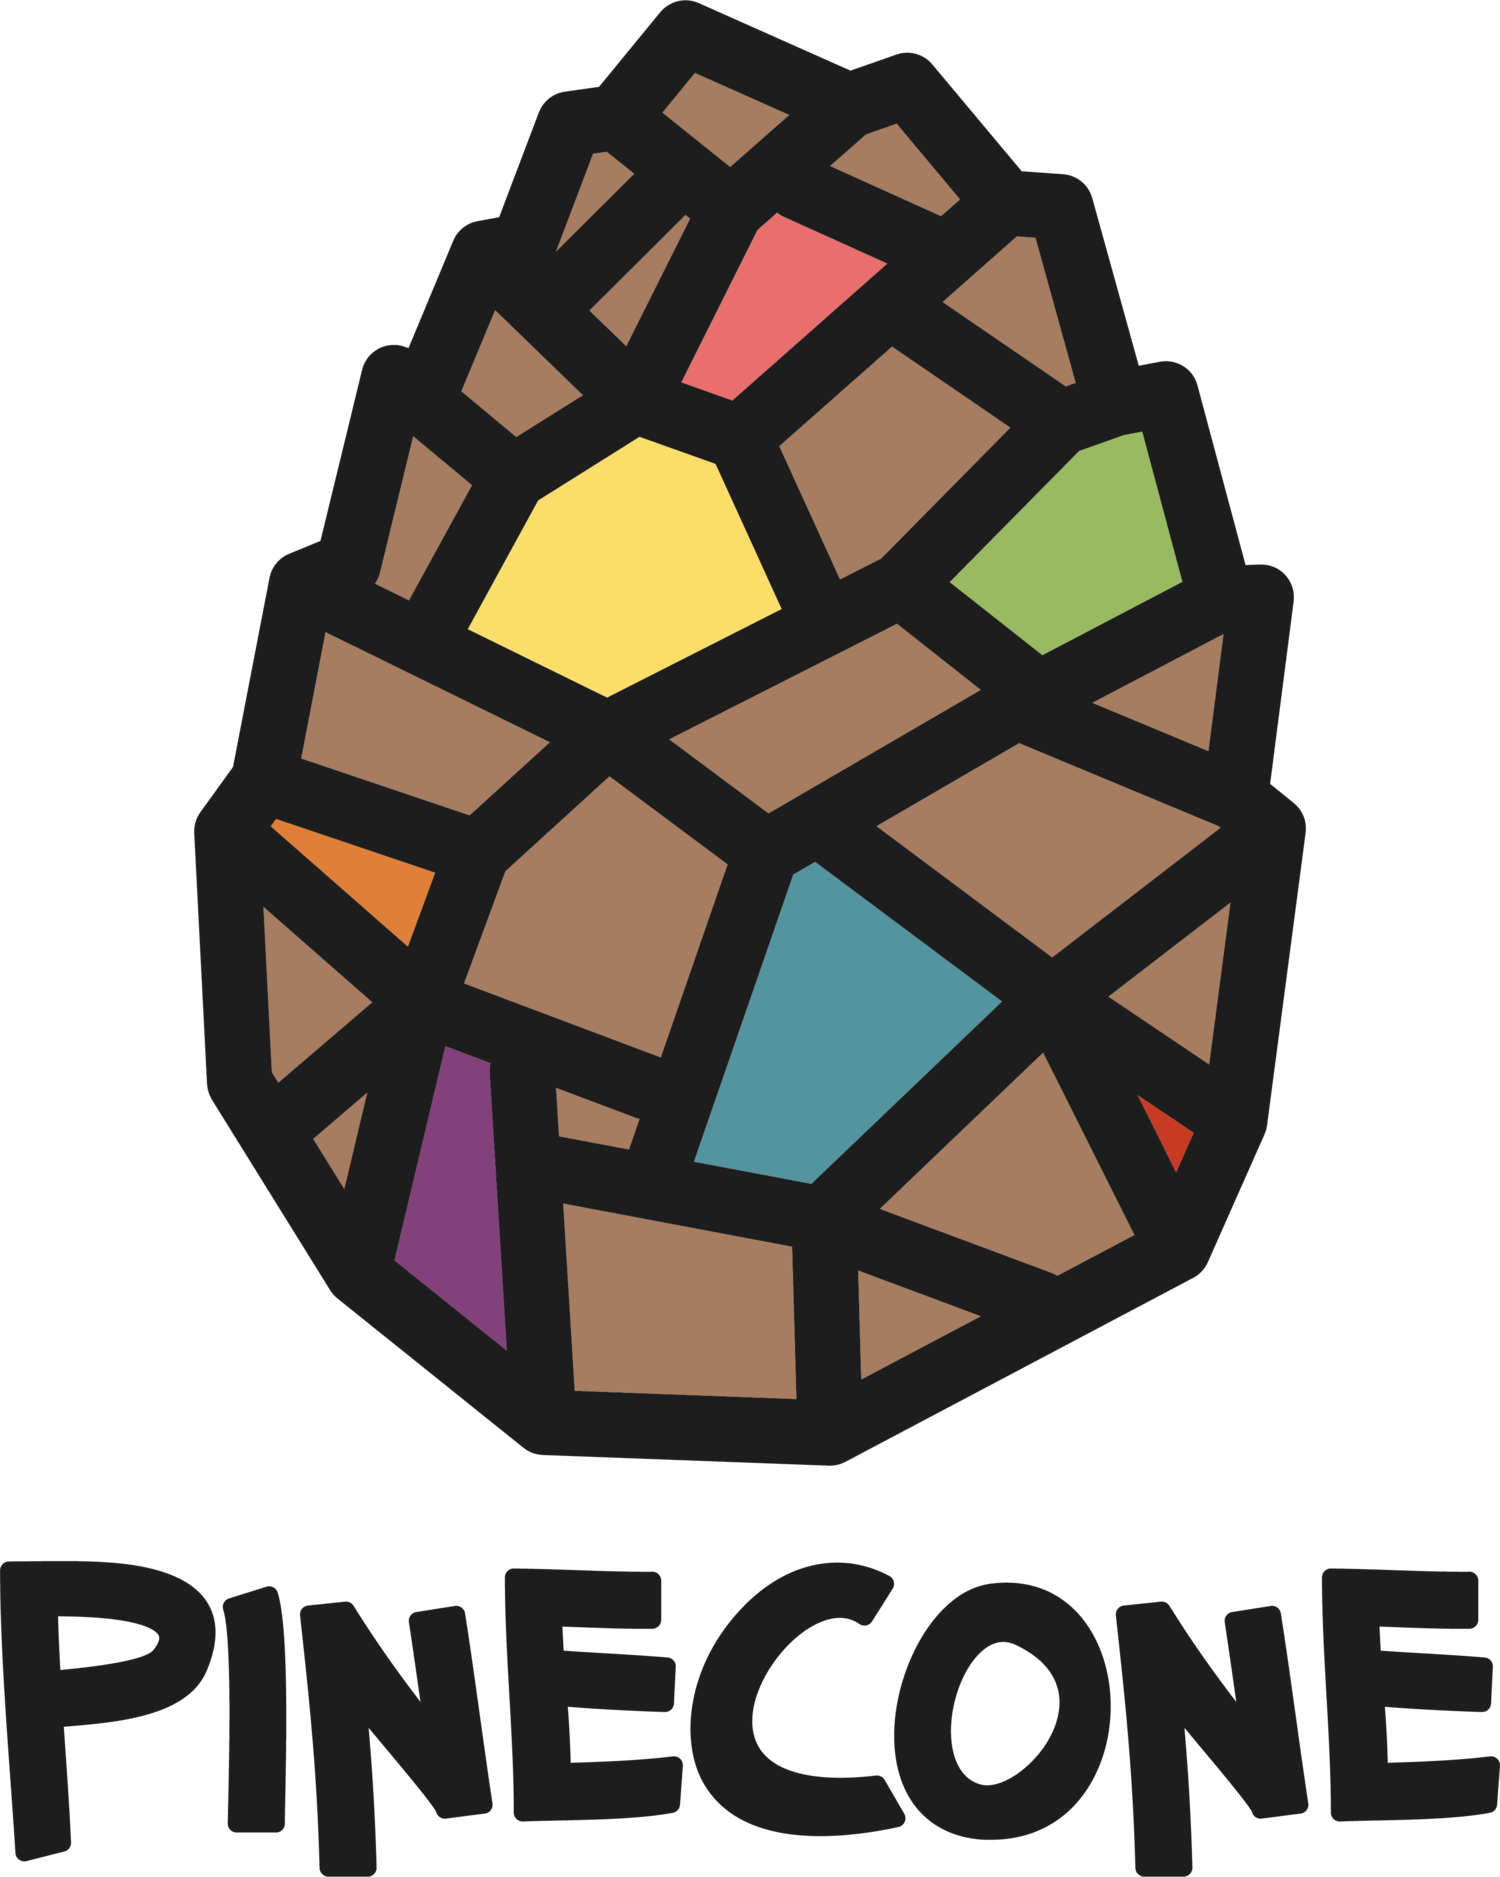 pinecone clipart border